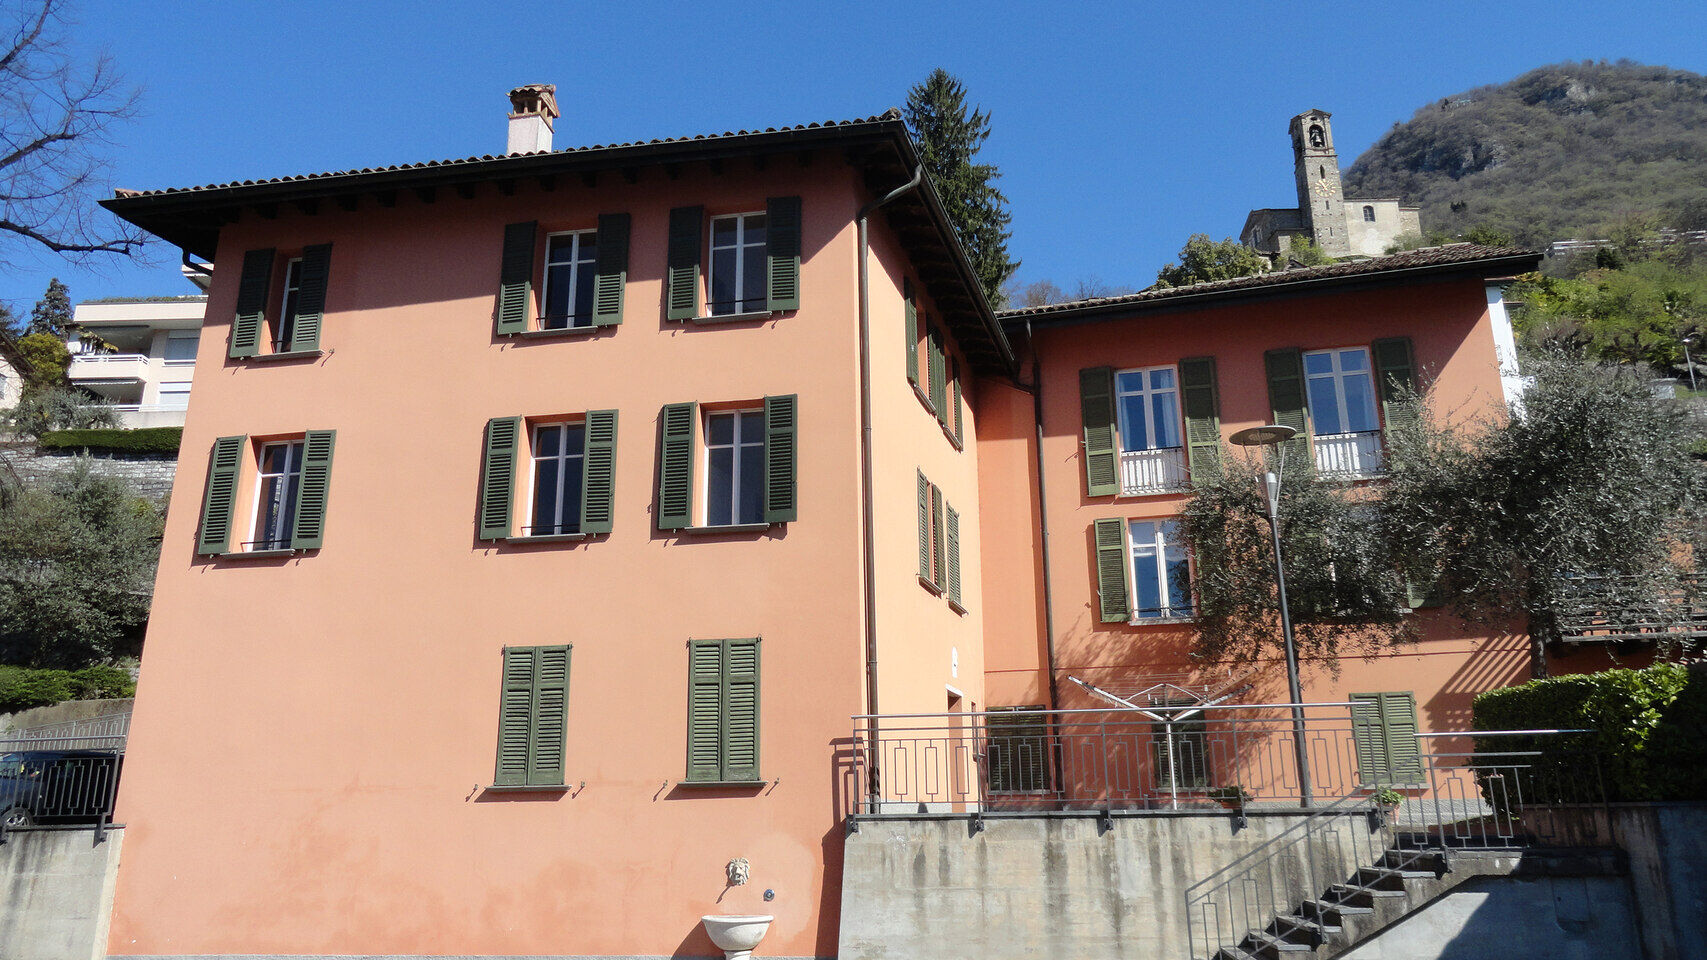 علوم انسانی و طبیعی: Casa Carla Cattaneo در Castagnola، در قلمرو شهرداری لوگانو، در Canton Ticino: میزبان بنیاد تحقیقات علمی IBSA خواهد بود، که اهداف بلندپروازانه جدیدی را برای خود تعیین می کند.